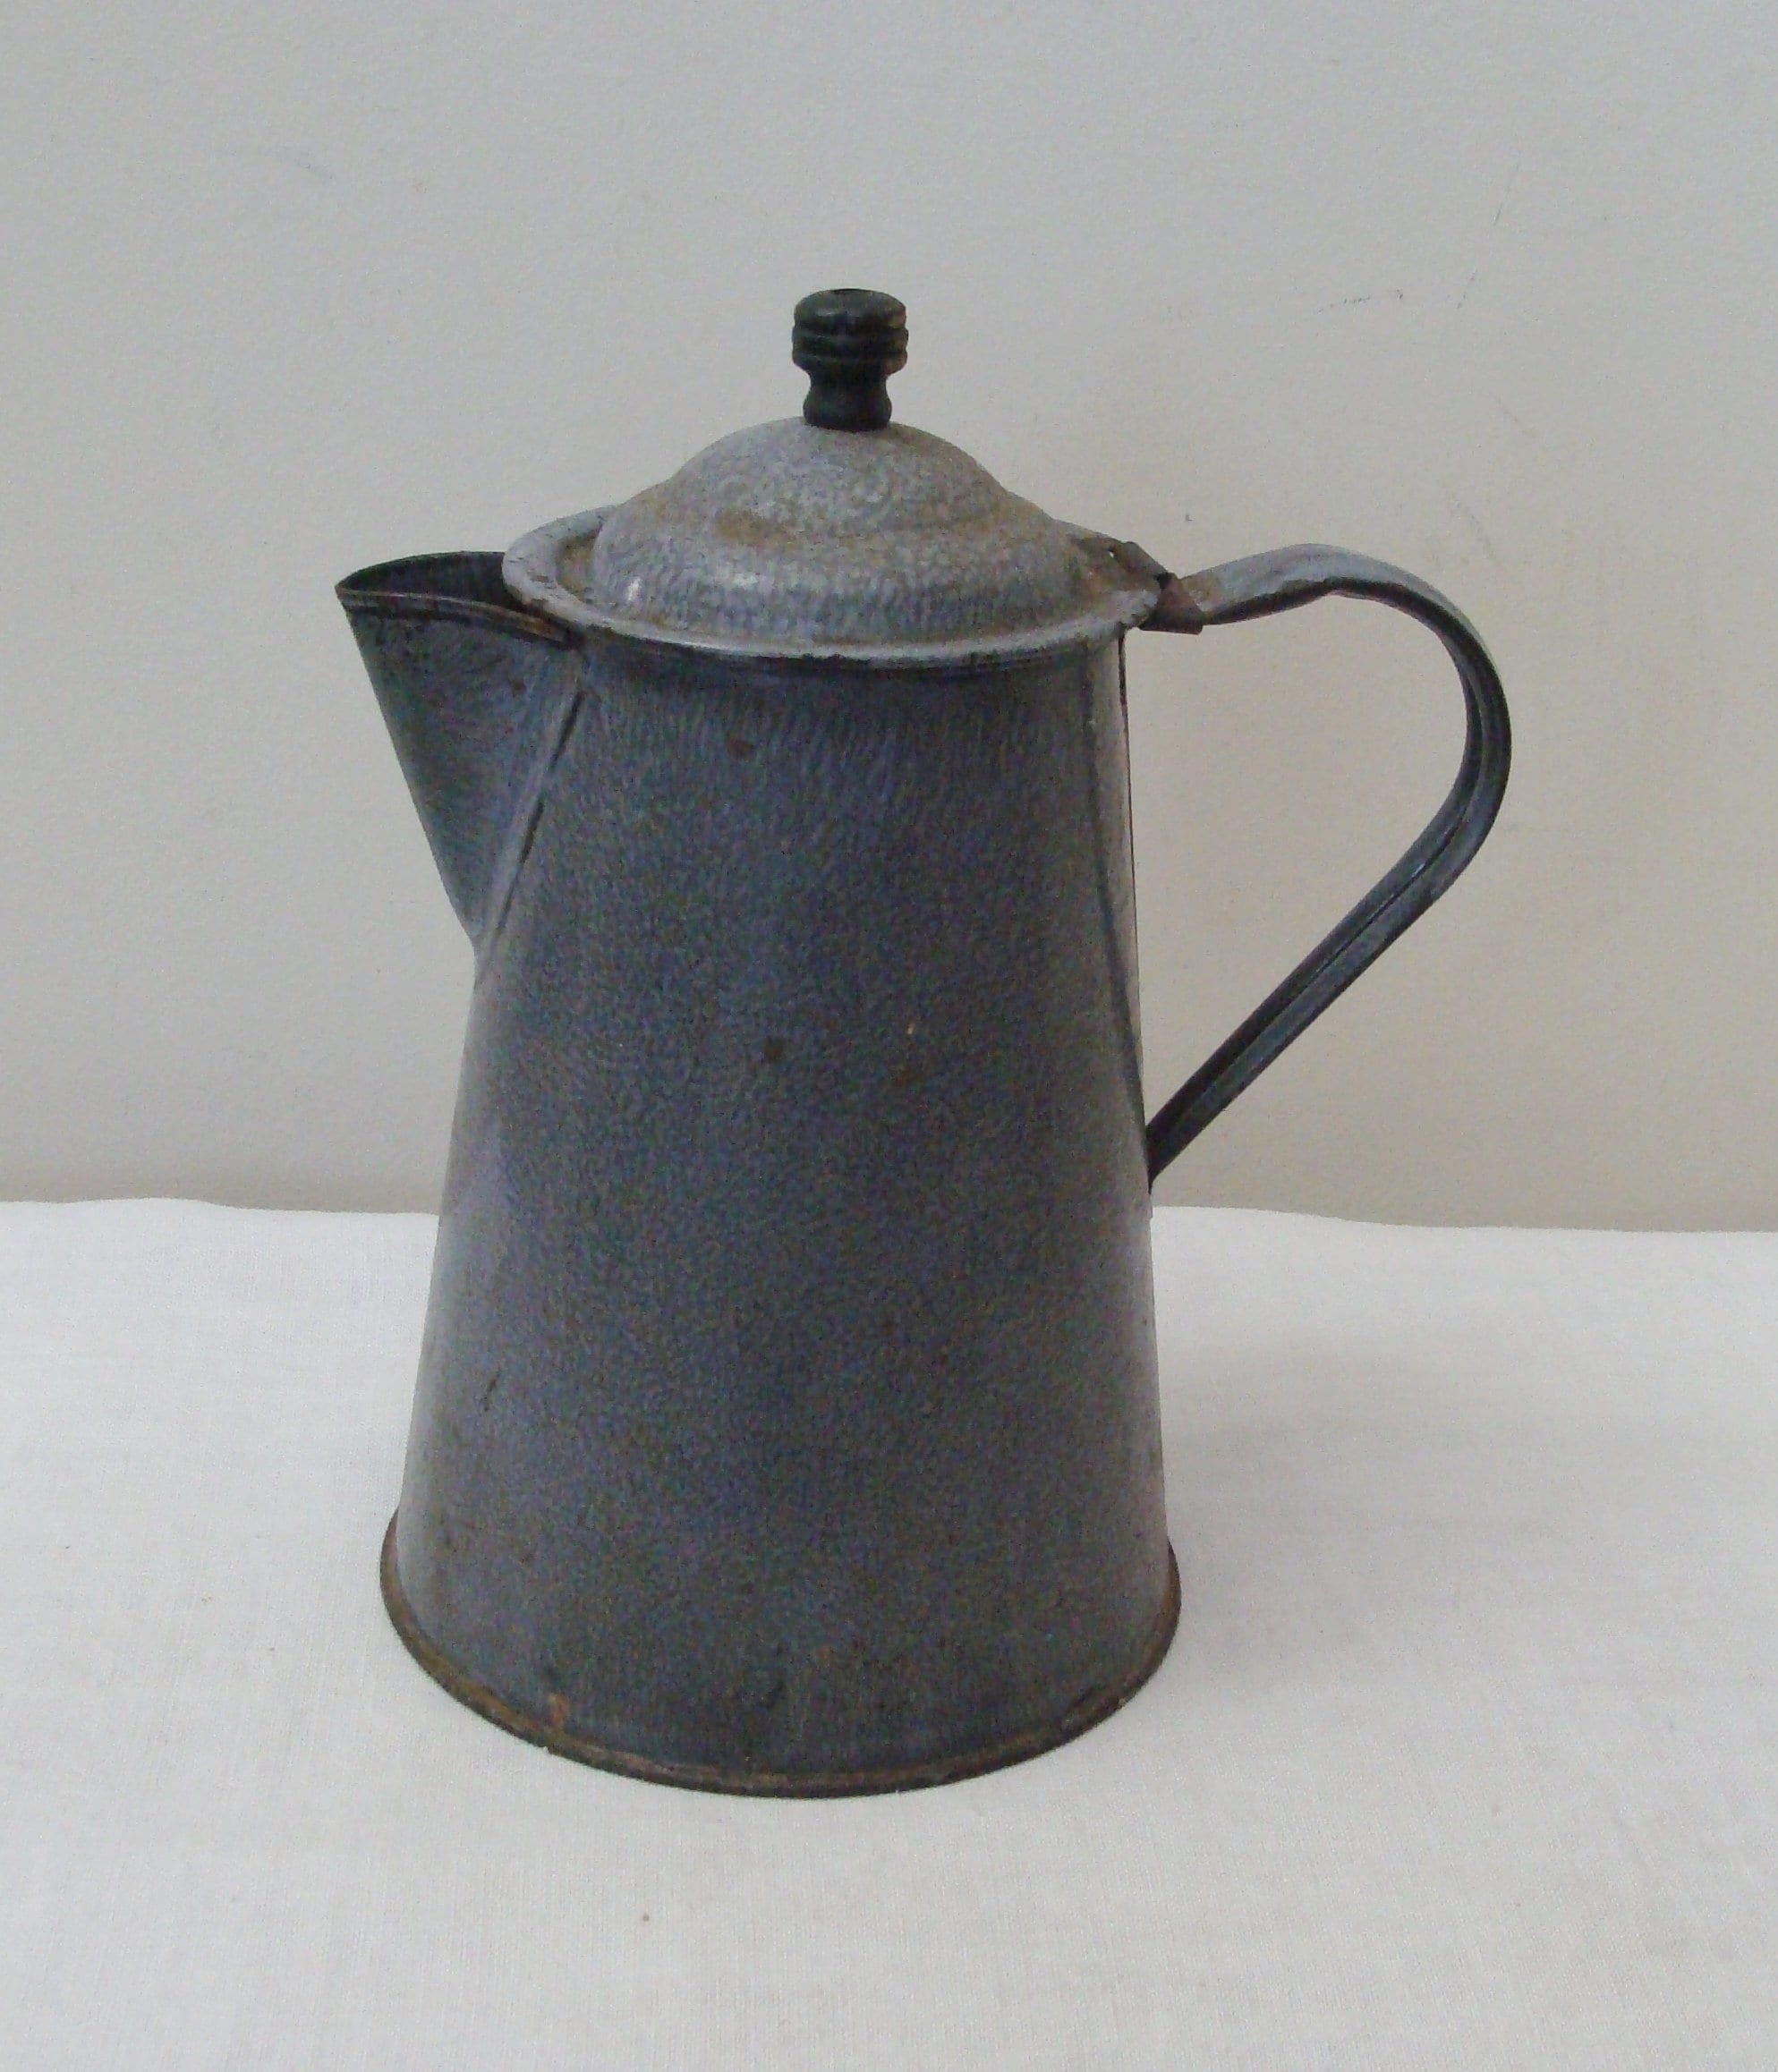 Vintage Grey Enamel Cowboy Coffee Pot